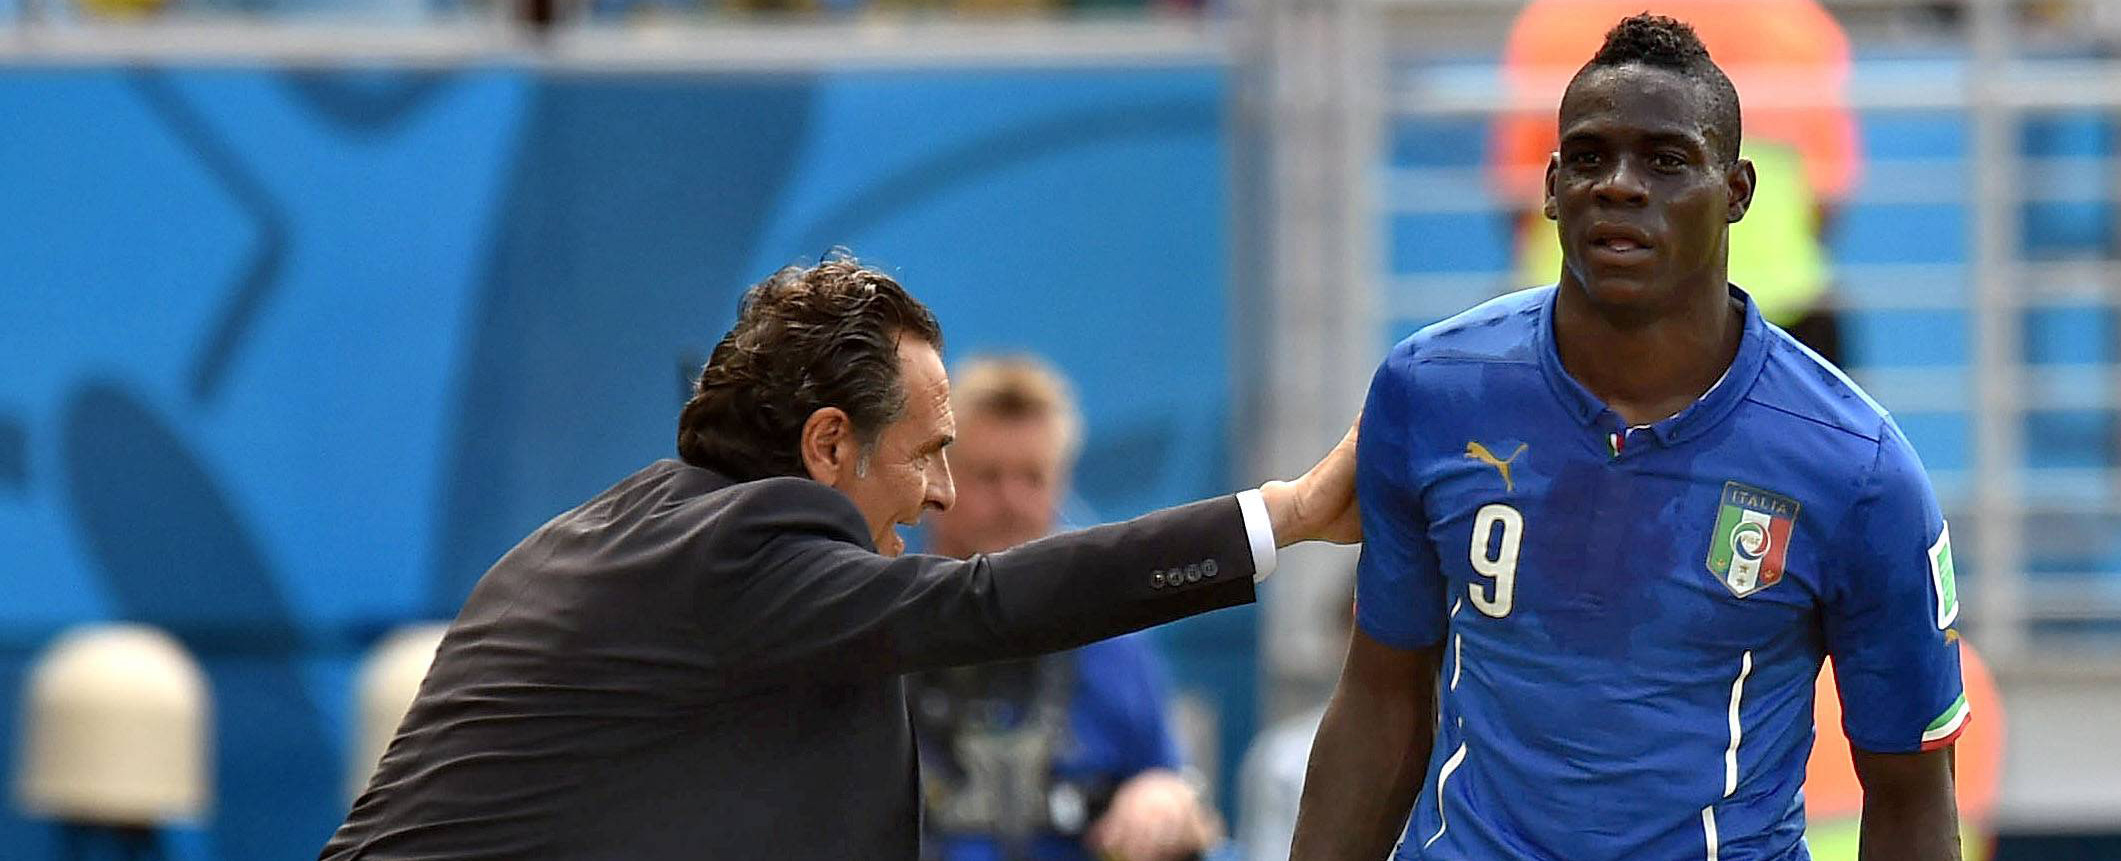 De inmiddels opgestapte Italiaanse bondscoach Cesare Prandelli probeert Mario Balotelli wat te motiveren tijdens het WK in Brazilië.